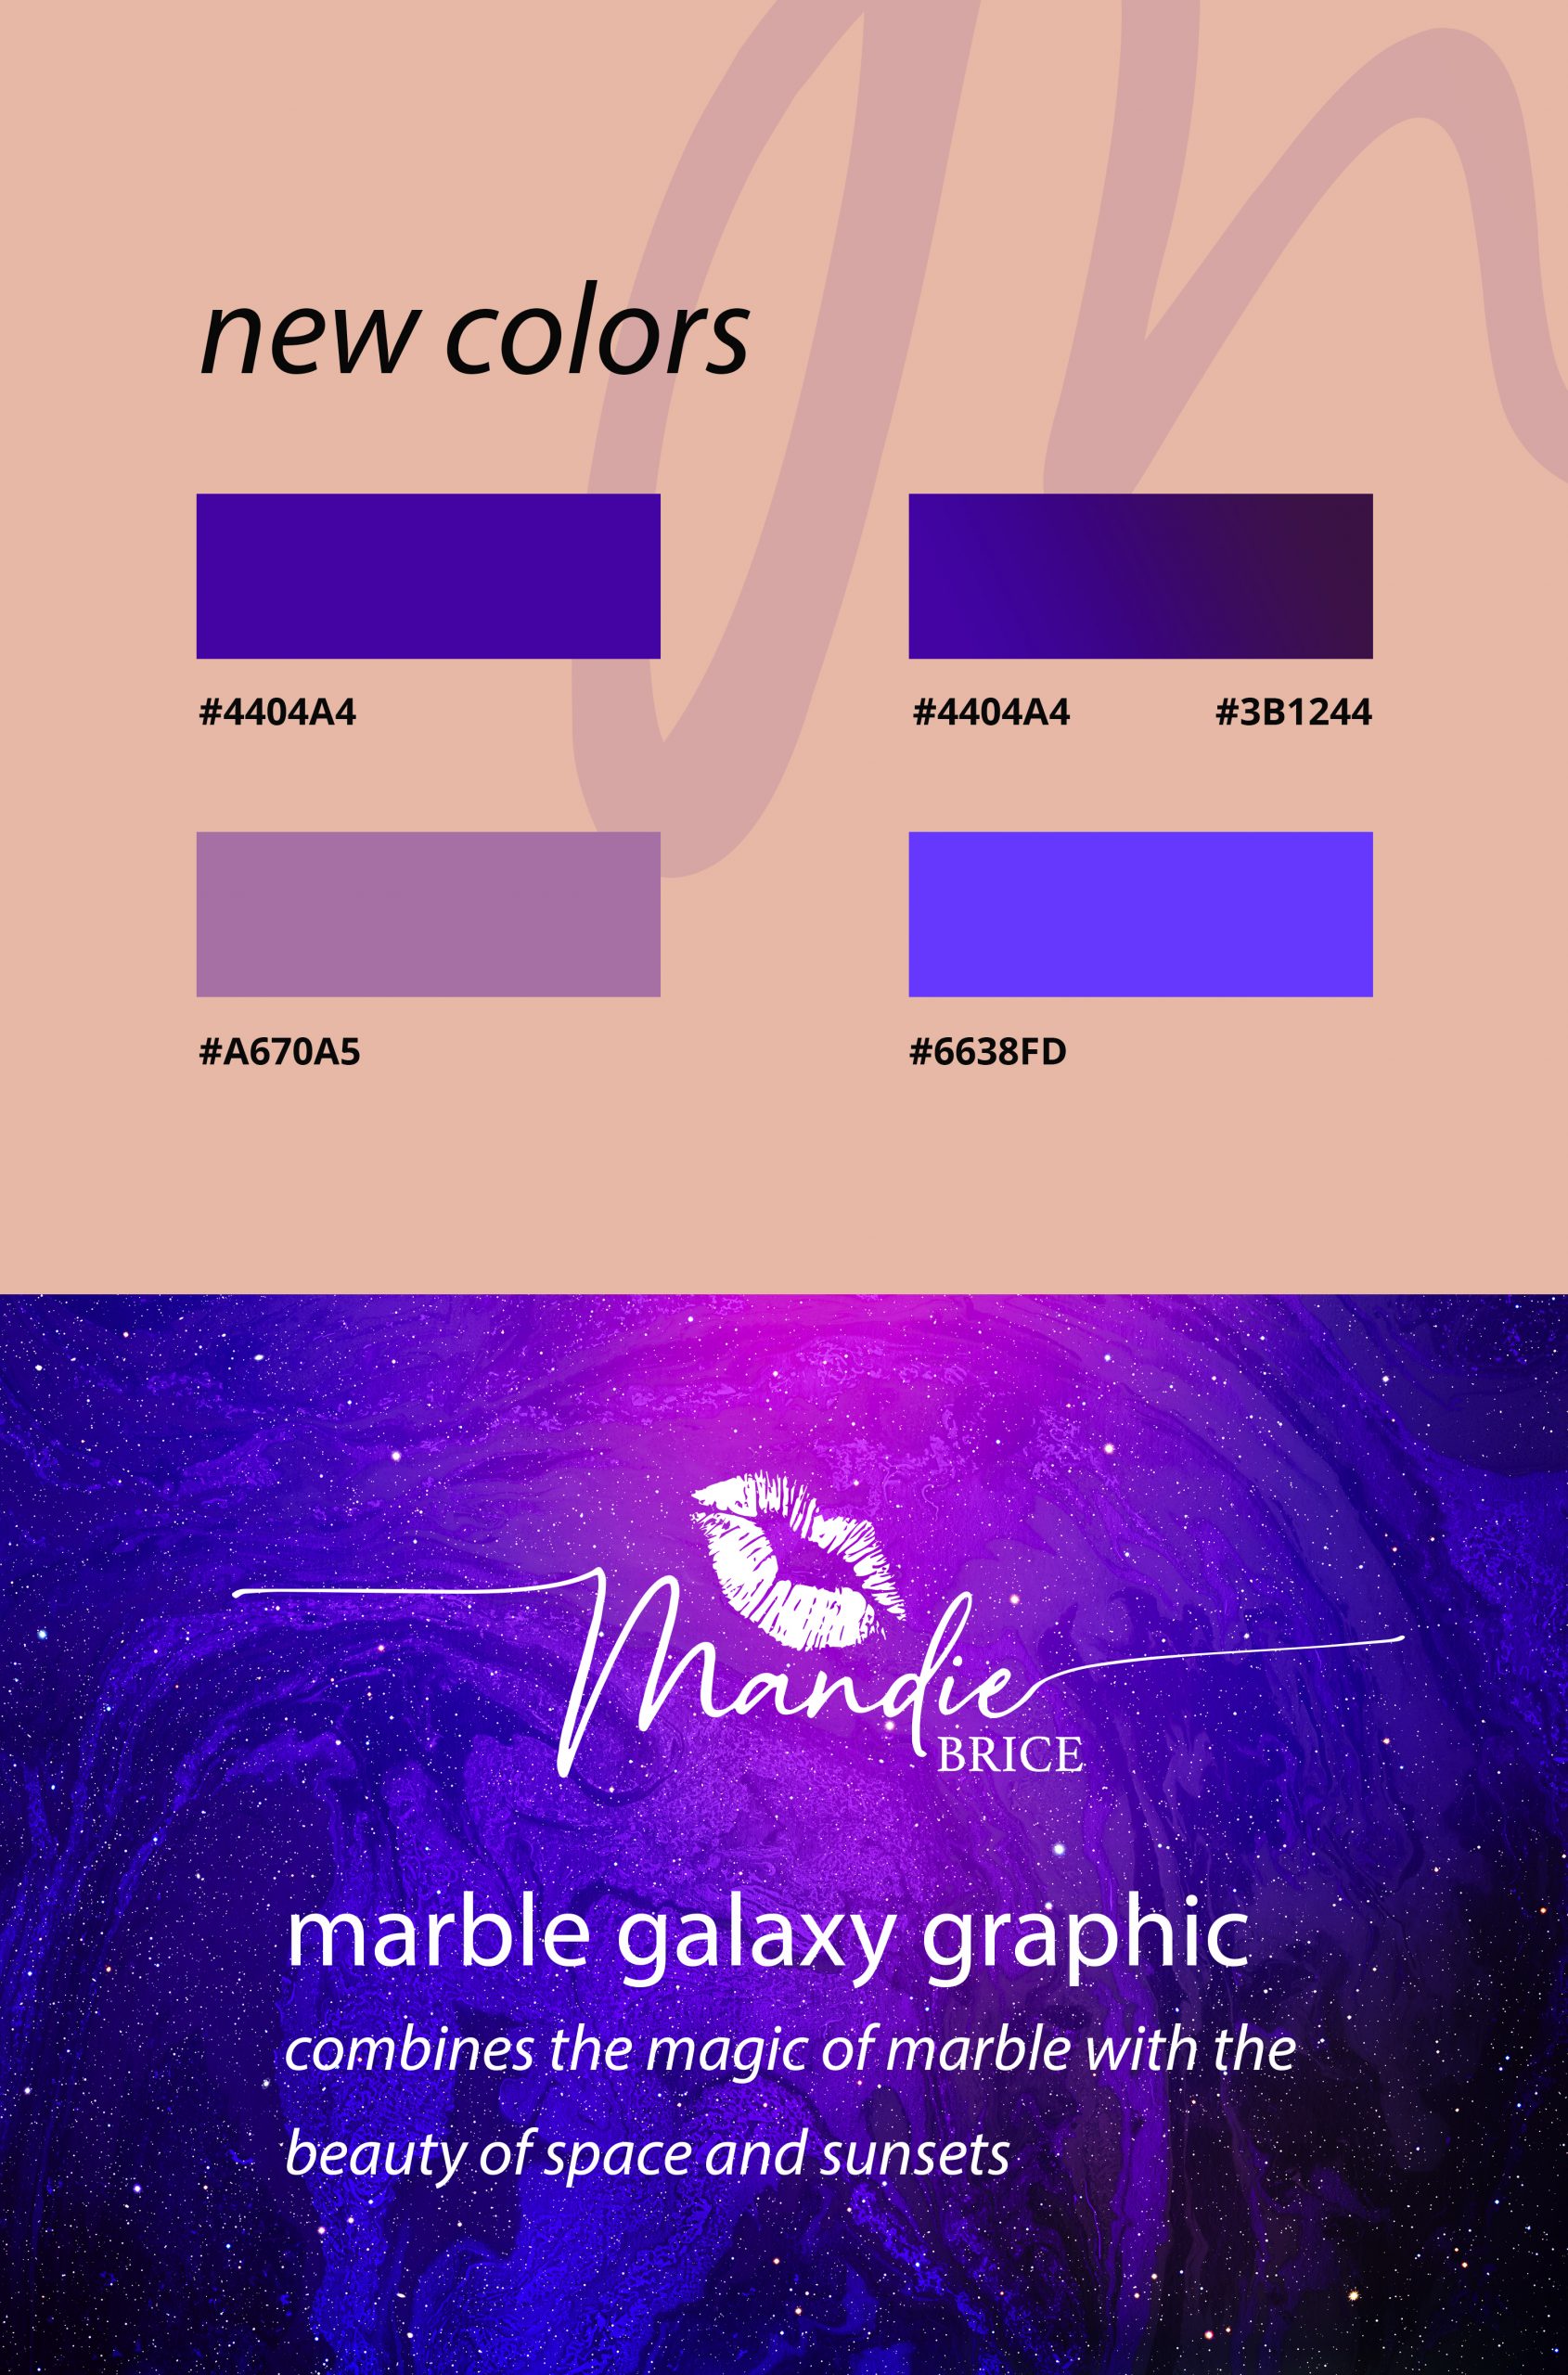 Mandie Brice Branding Guidelines Colors